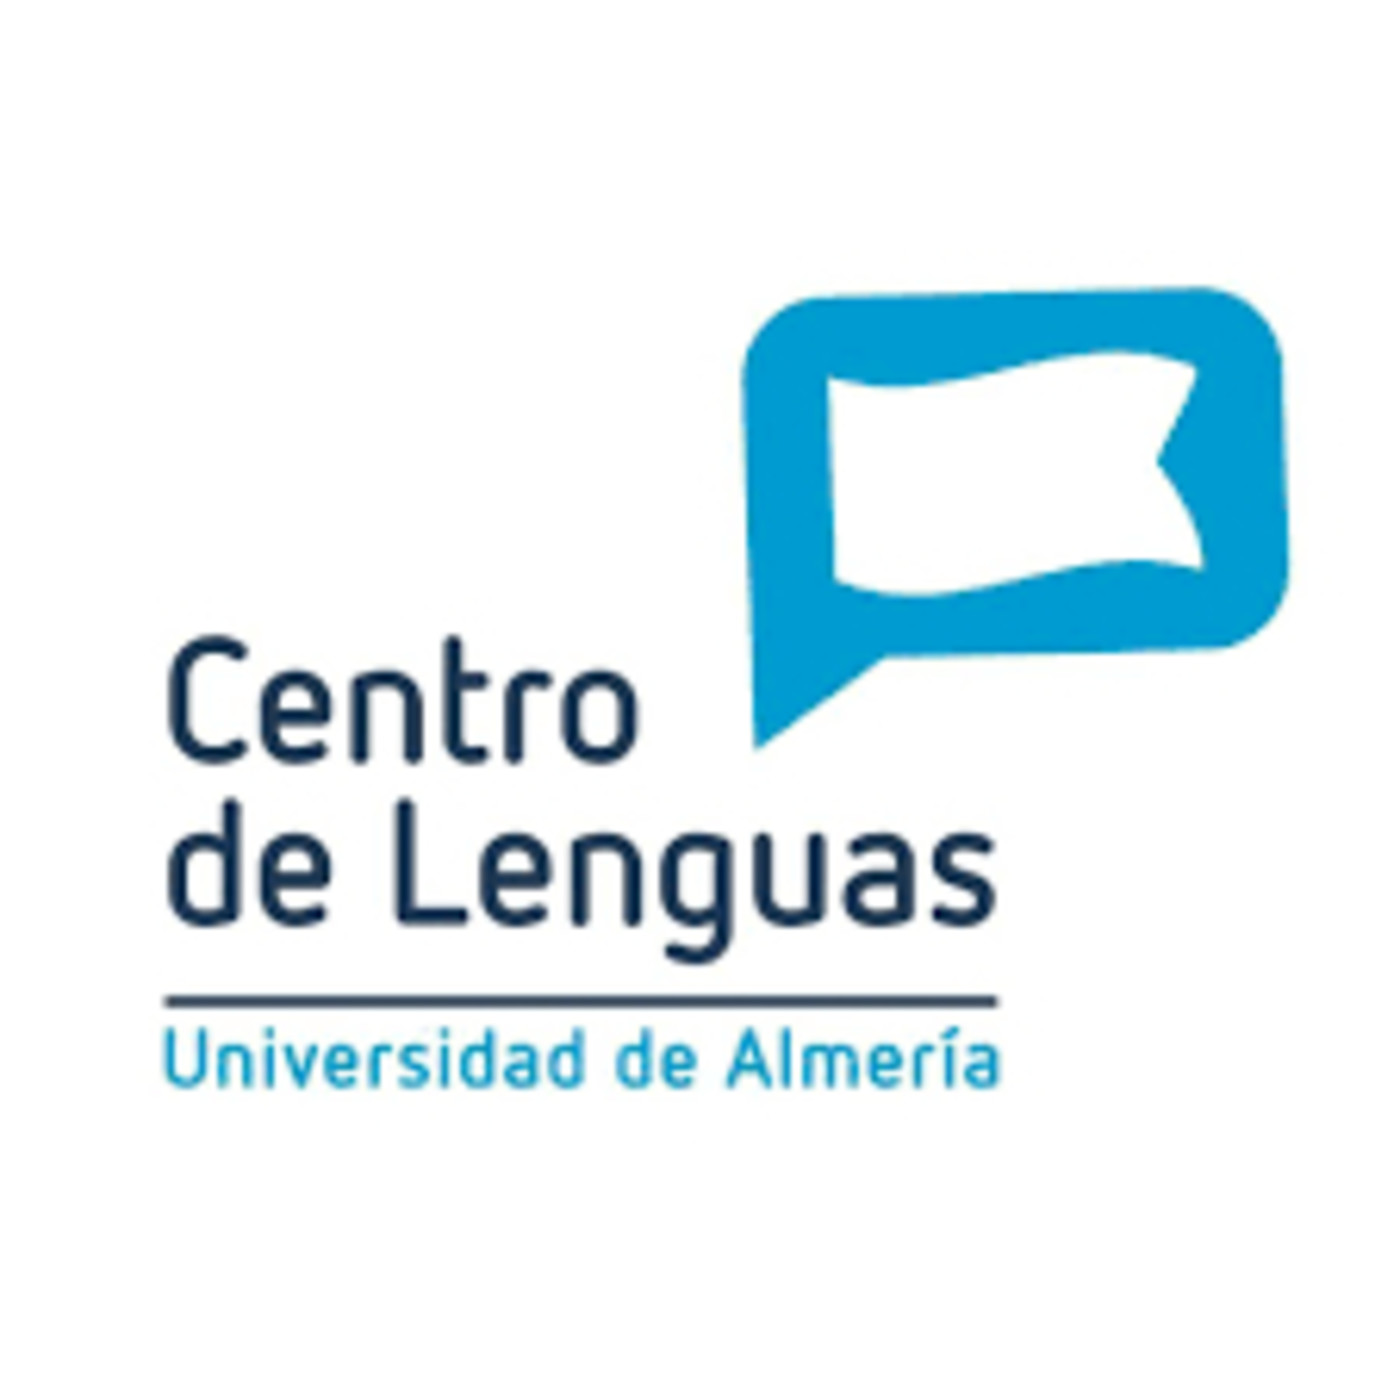 Los intercambios de idiomas en el Centro de Lenguas de la UAL